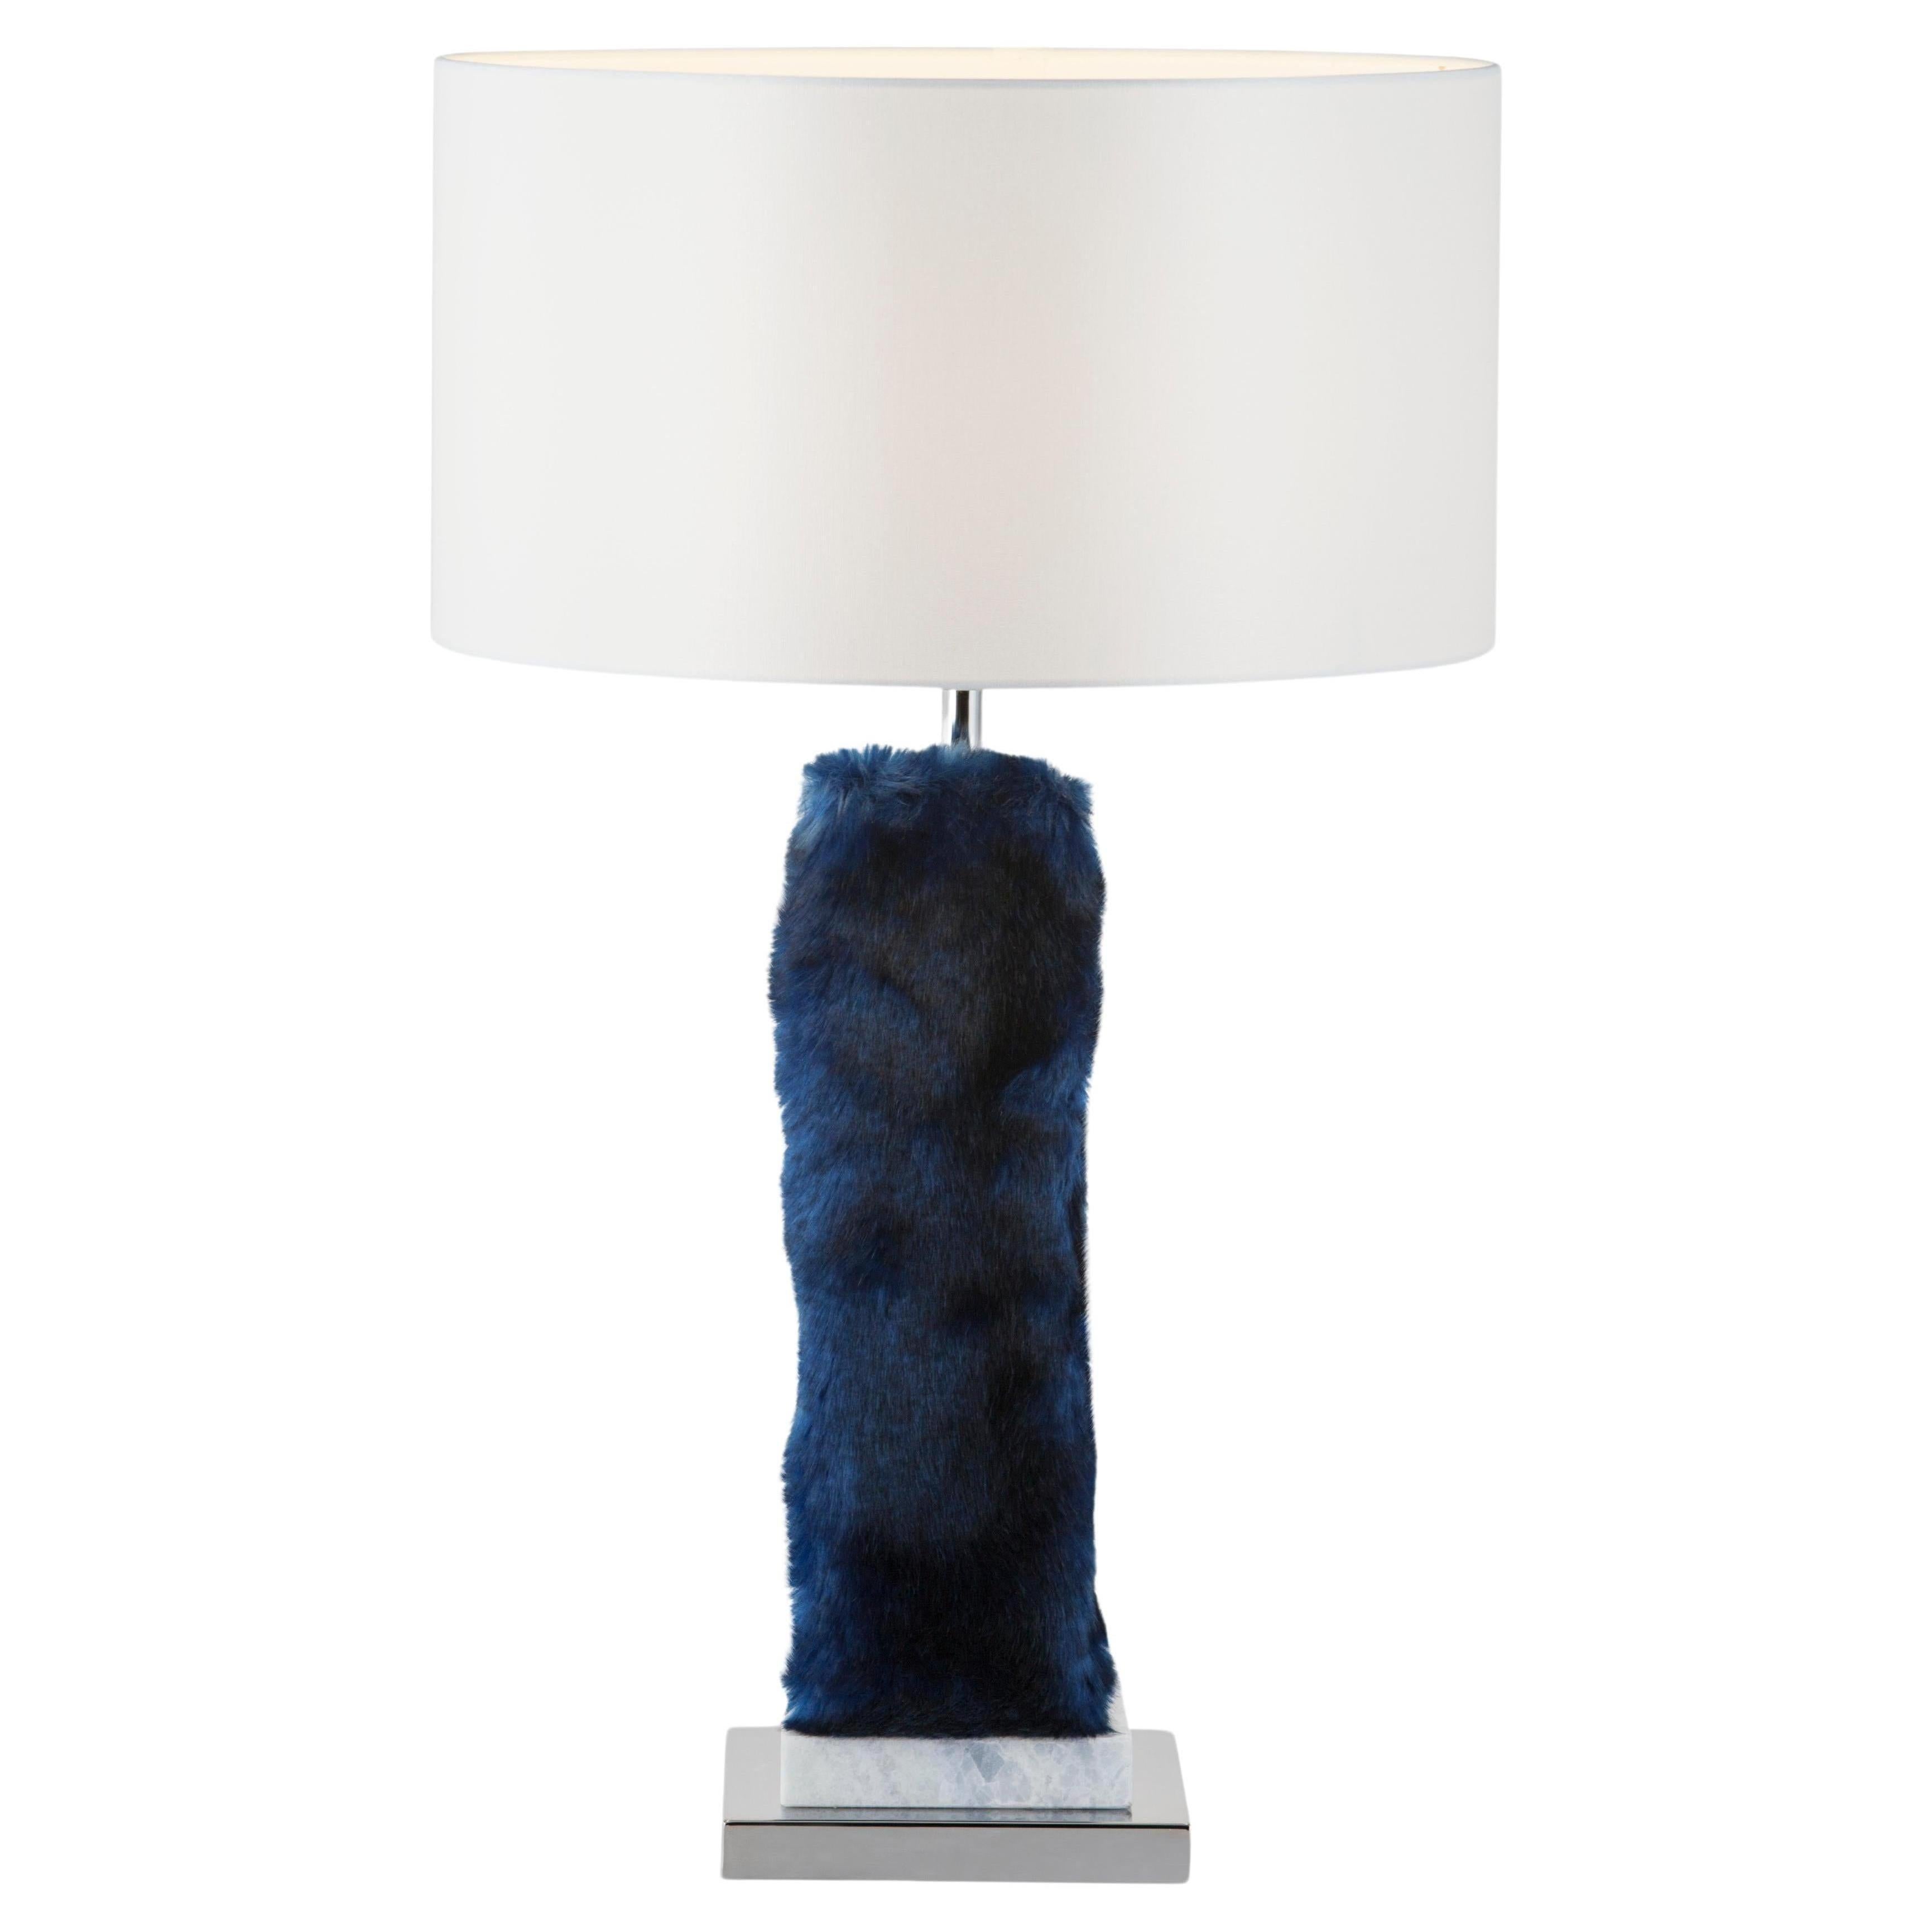 Lot de 2 lampes de table Simões, collection moderne, fabriquées à la main au Portugal - Europe par GF Modern.

Simões est une lampe de table élégante et un complément attrayant pour une maison moderne. Le marbre Blue Crystal et l'acier inoxydable se